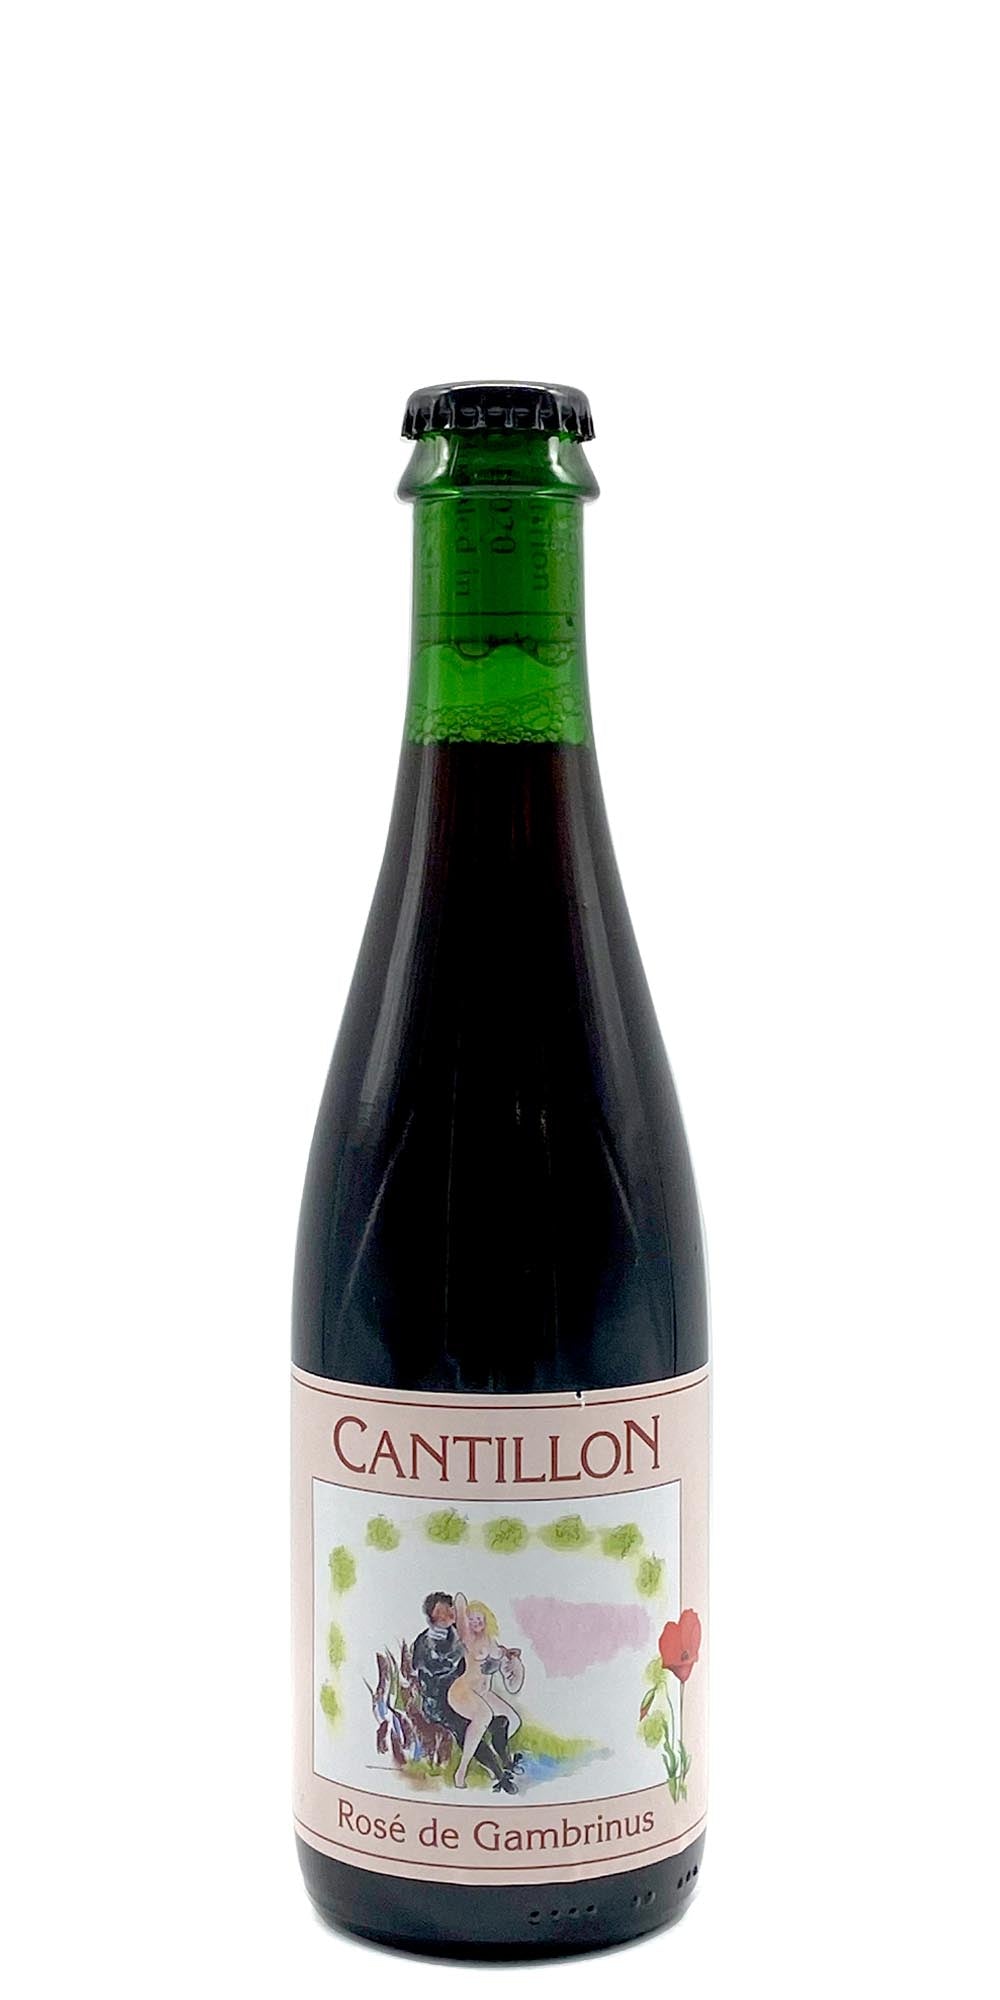 Cantillon - Rose de Gambrinus (2016)